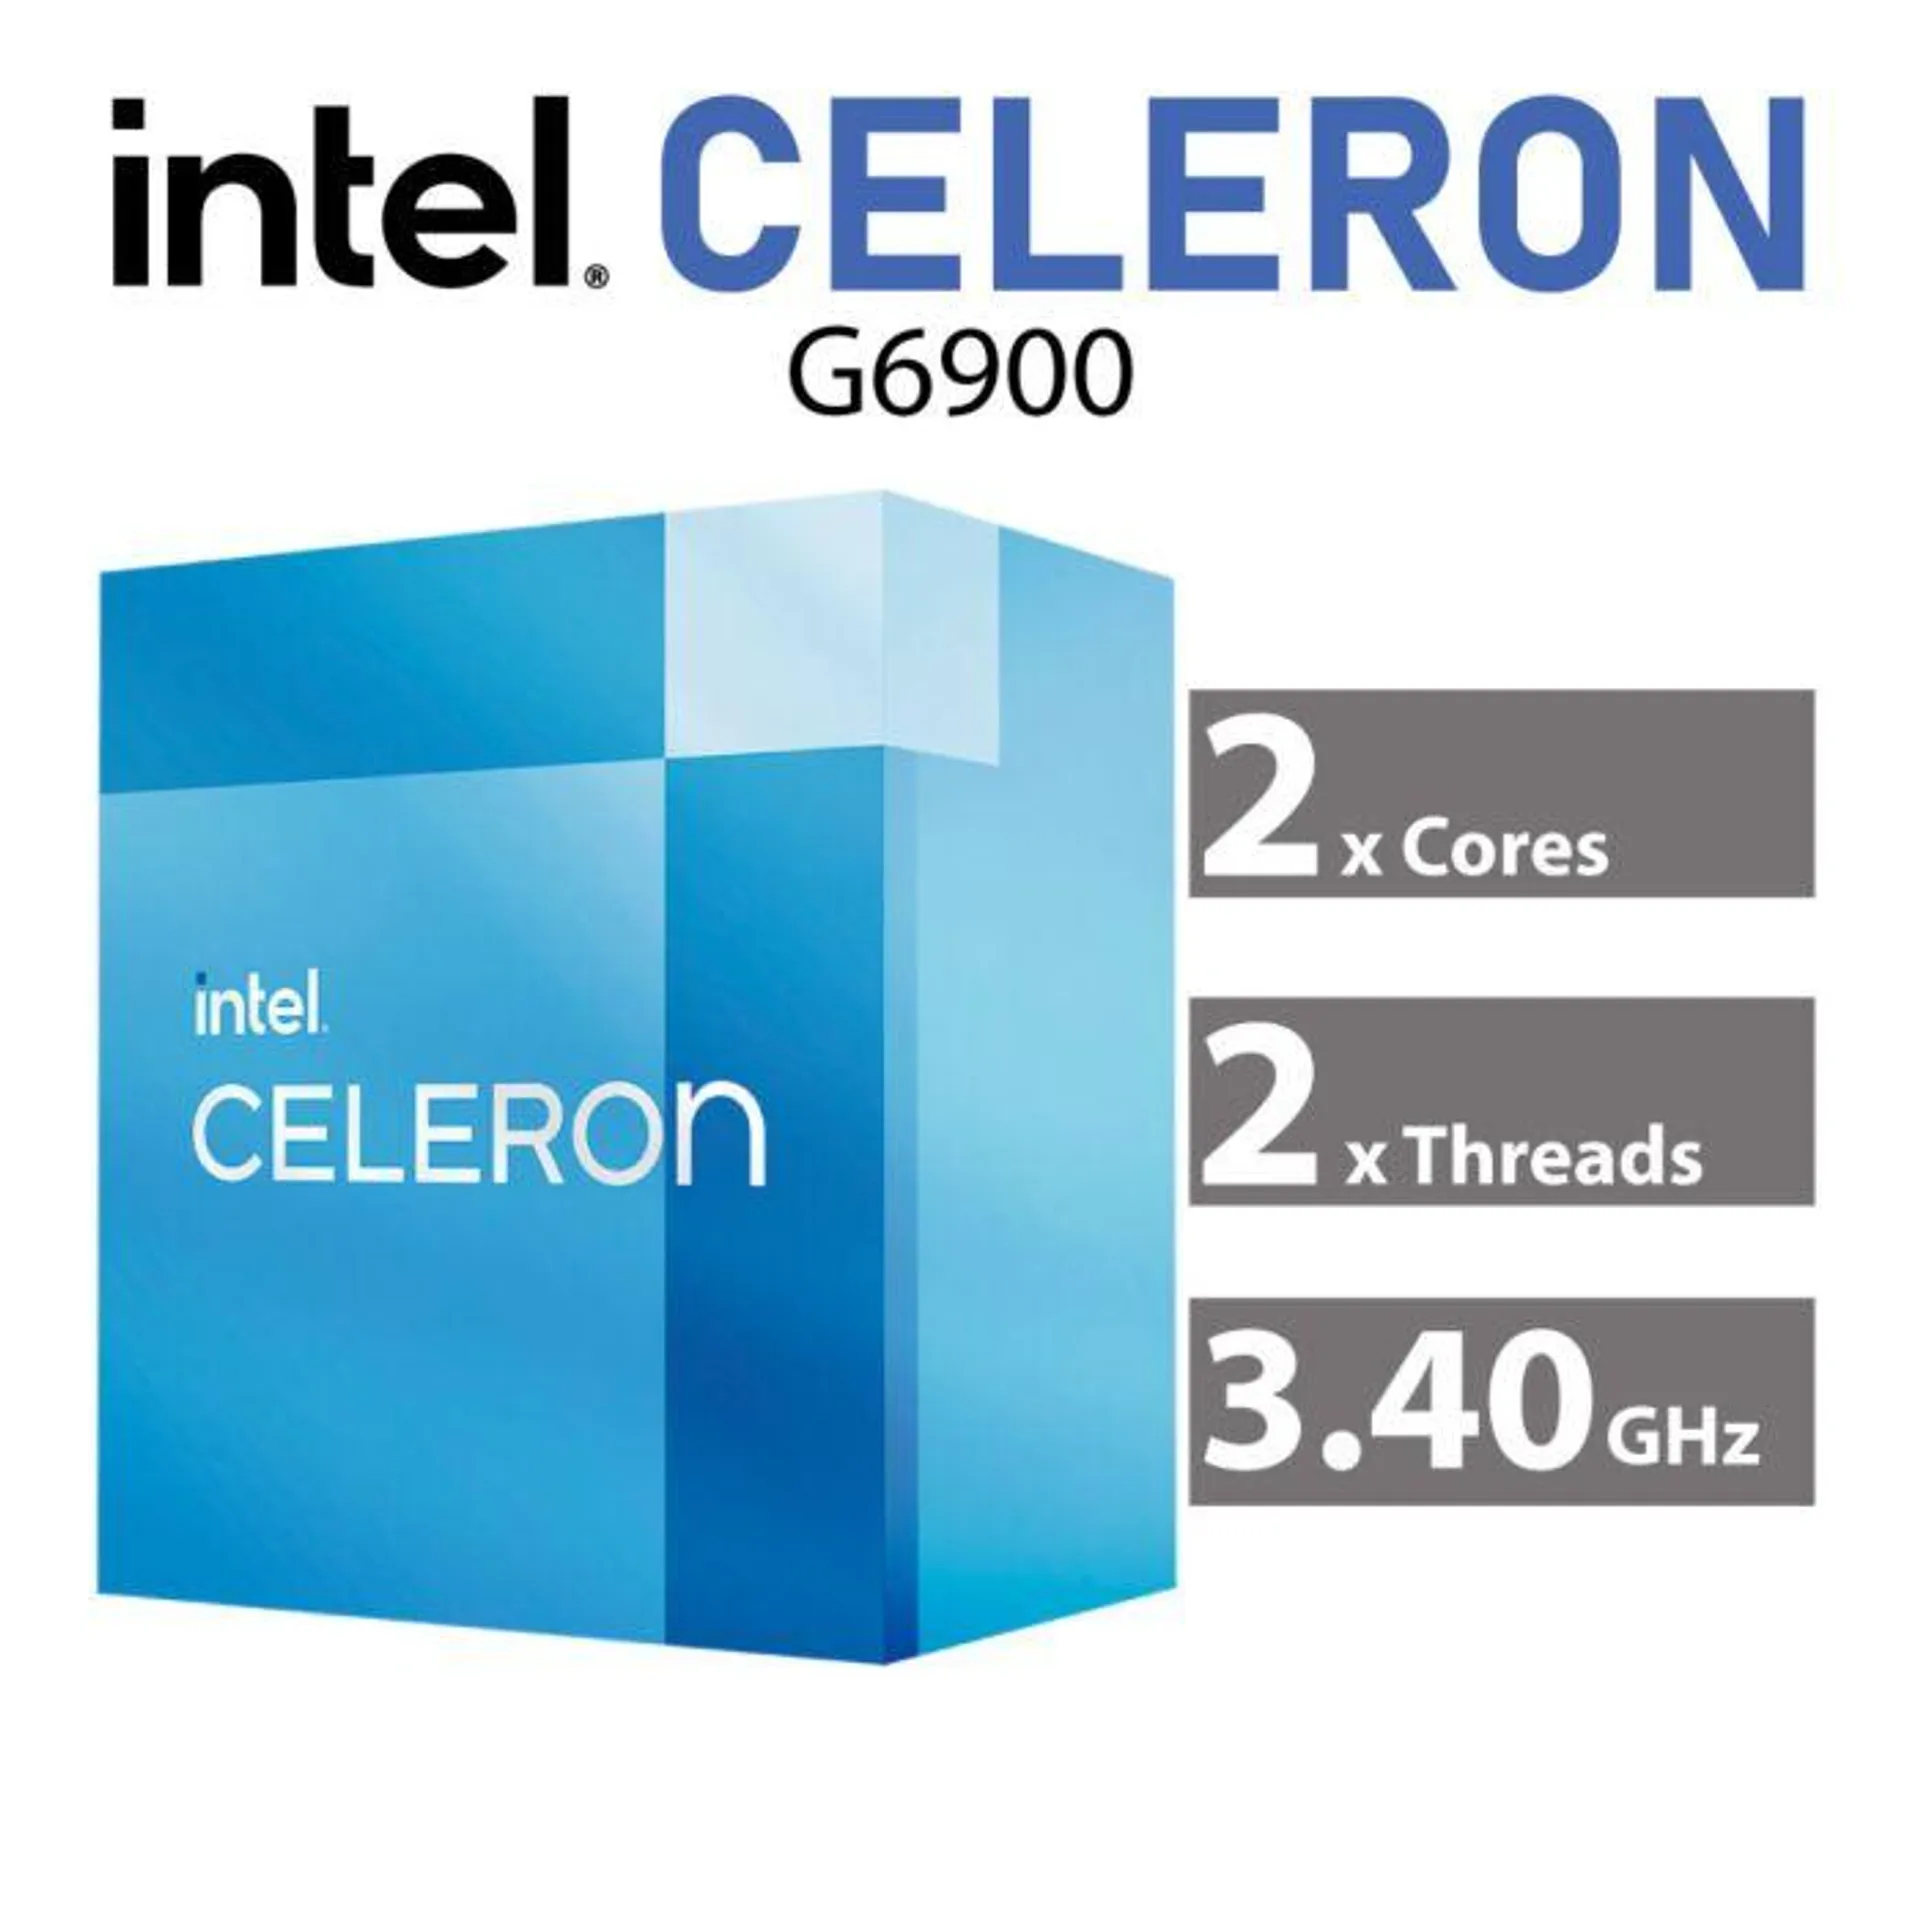 Intel Celeron G6900 Alder Lake 2-Core 3.40GHz LGA1700 46W BX80715G6900 Desktop Processor